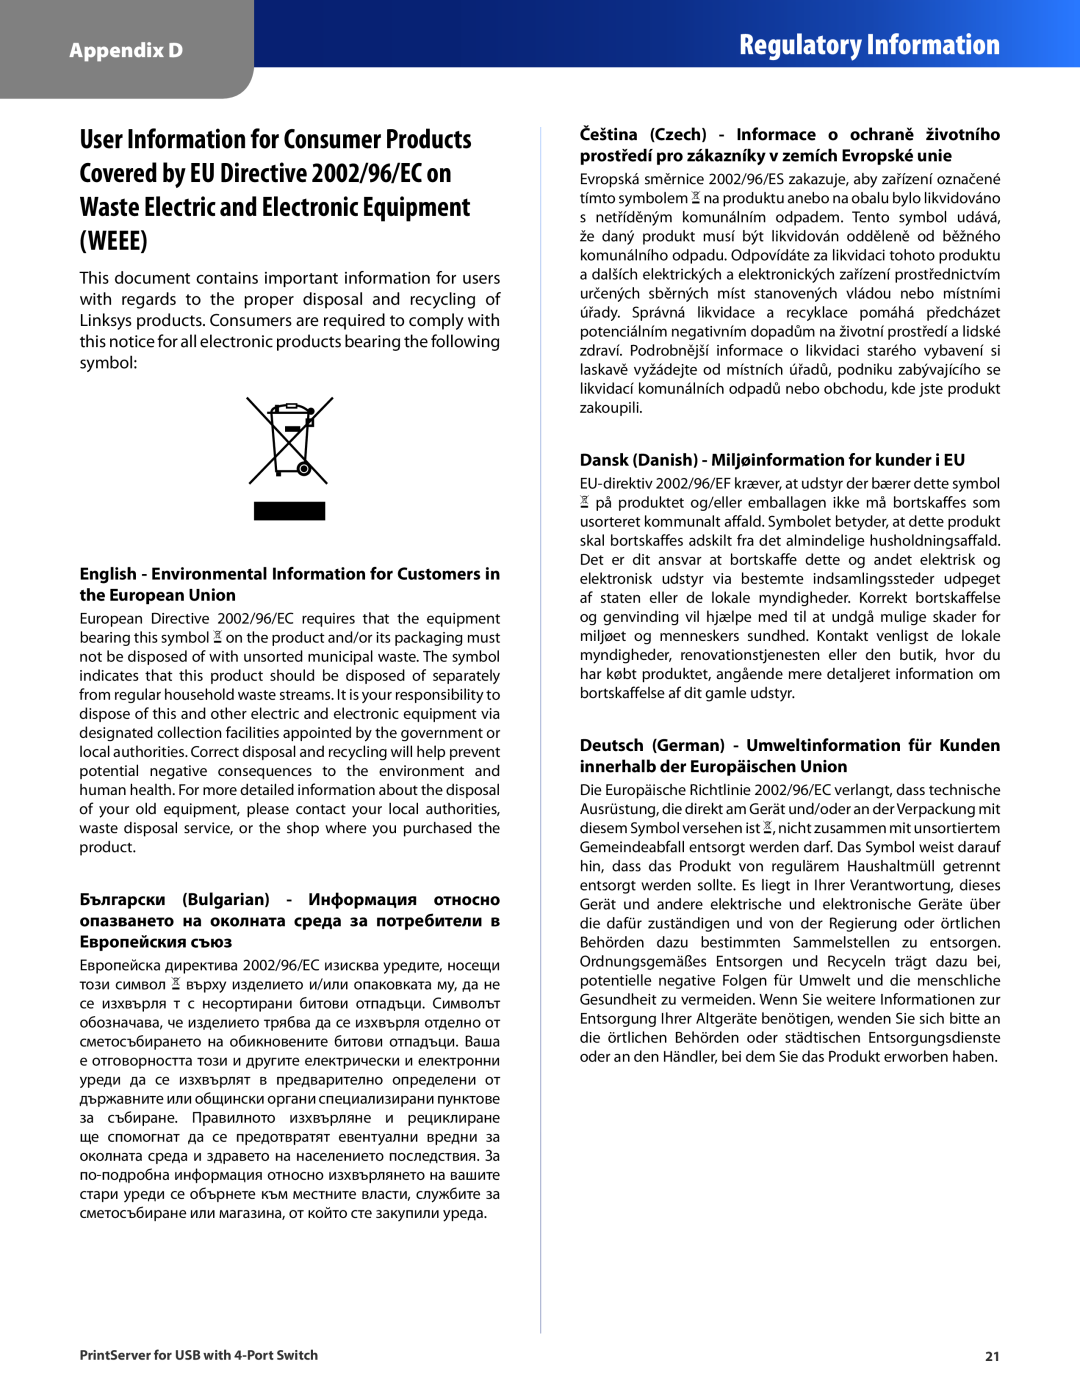 Cisco Systems PSUS4 manual Regulatory Information, Appendix D, Dansk Danish - Miljøinformation for kunder i EU 